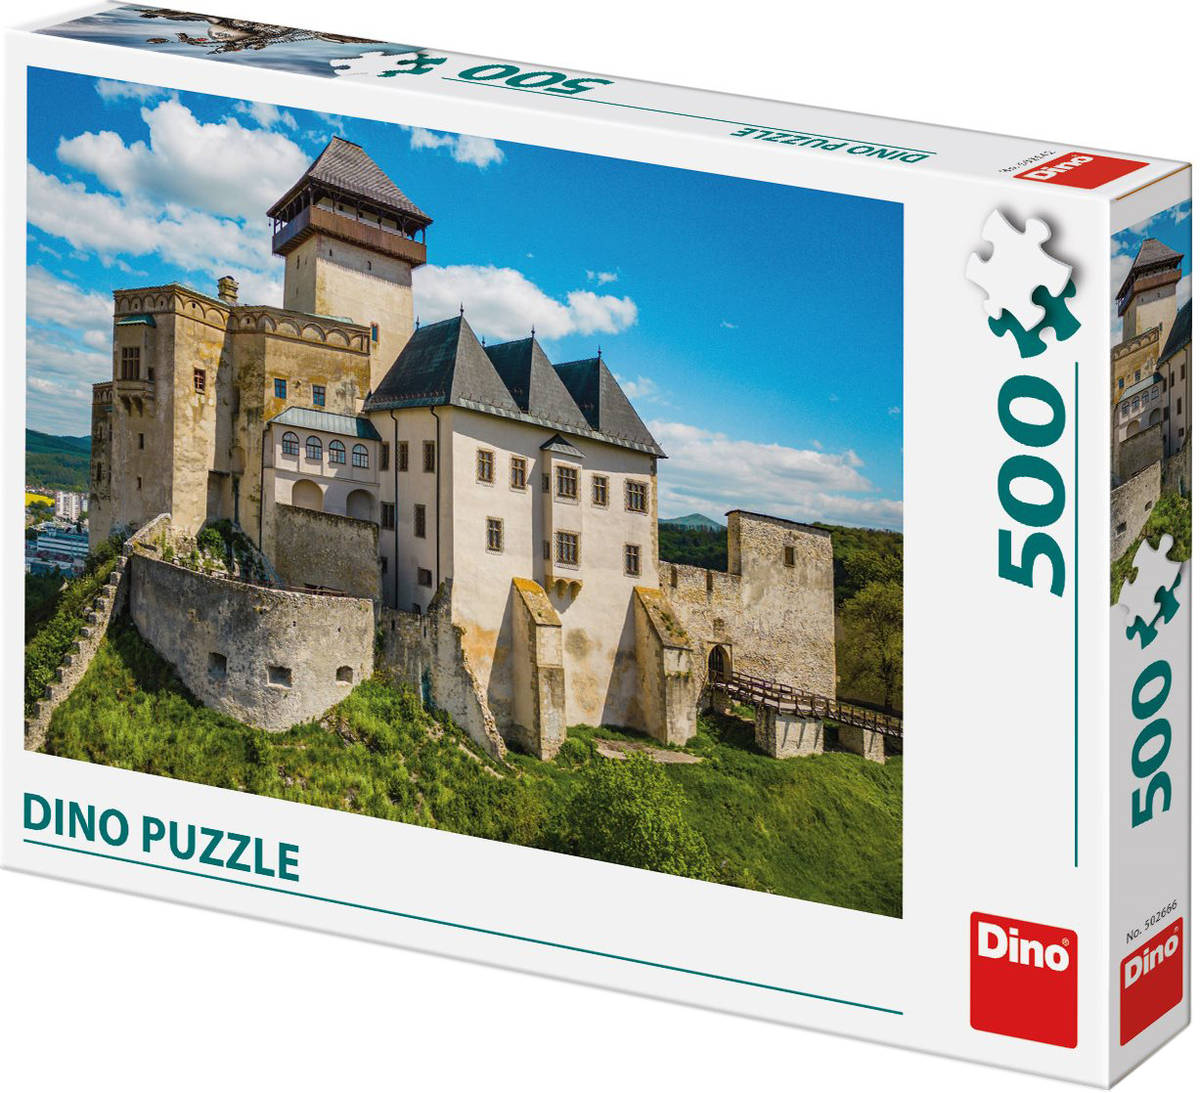 DINO Puzzle Trenčínský hrad 47x33cm foto skládačka 500 dílků v krabici